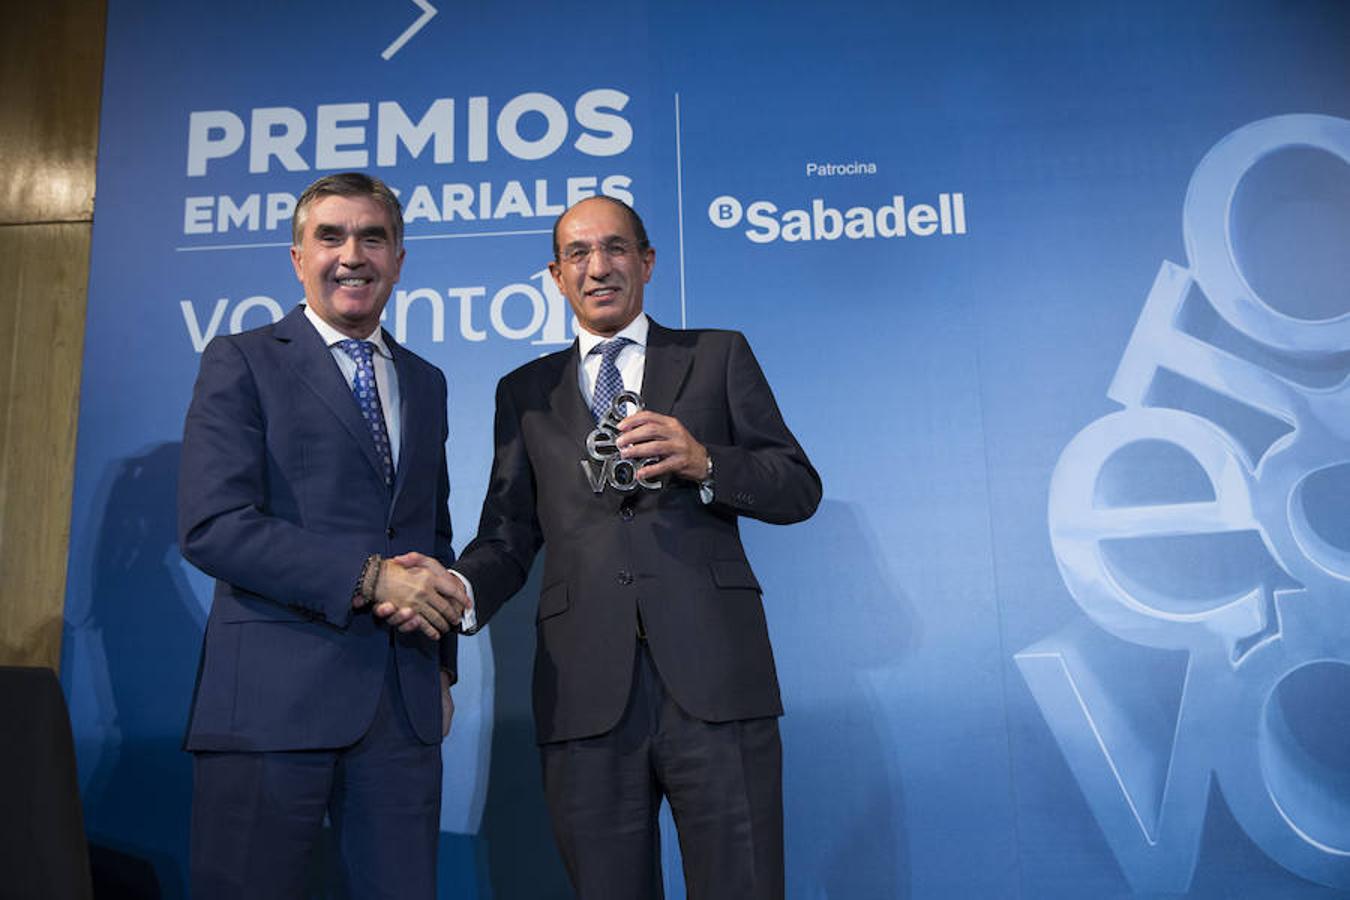 José Luis González-Besada, de El Corte Inglés, recibe el galardón por «mantenerse firmes en sus principios» de responsabilidad social corporativa.